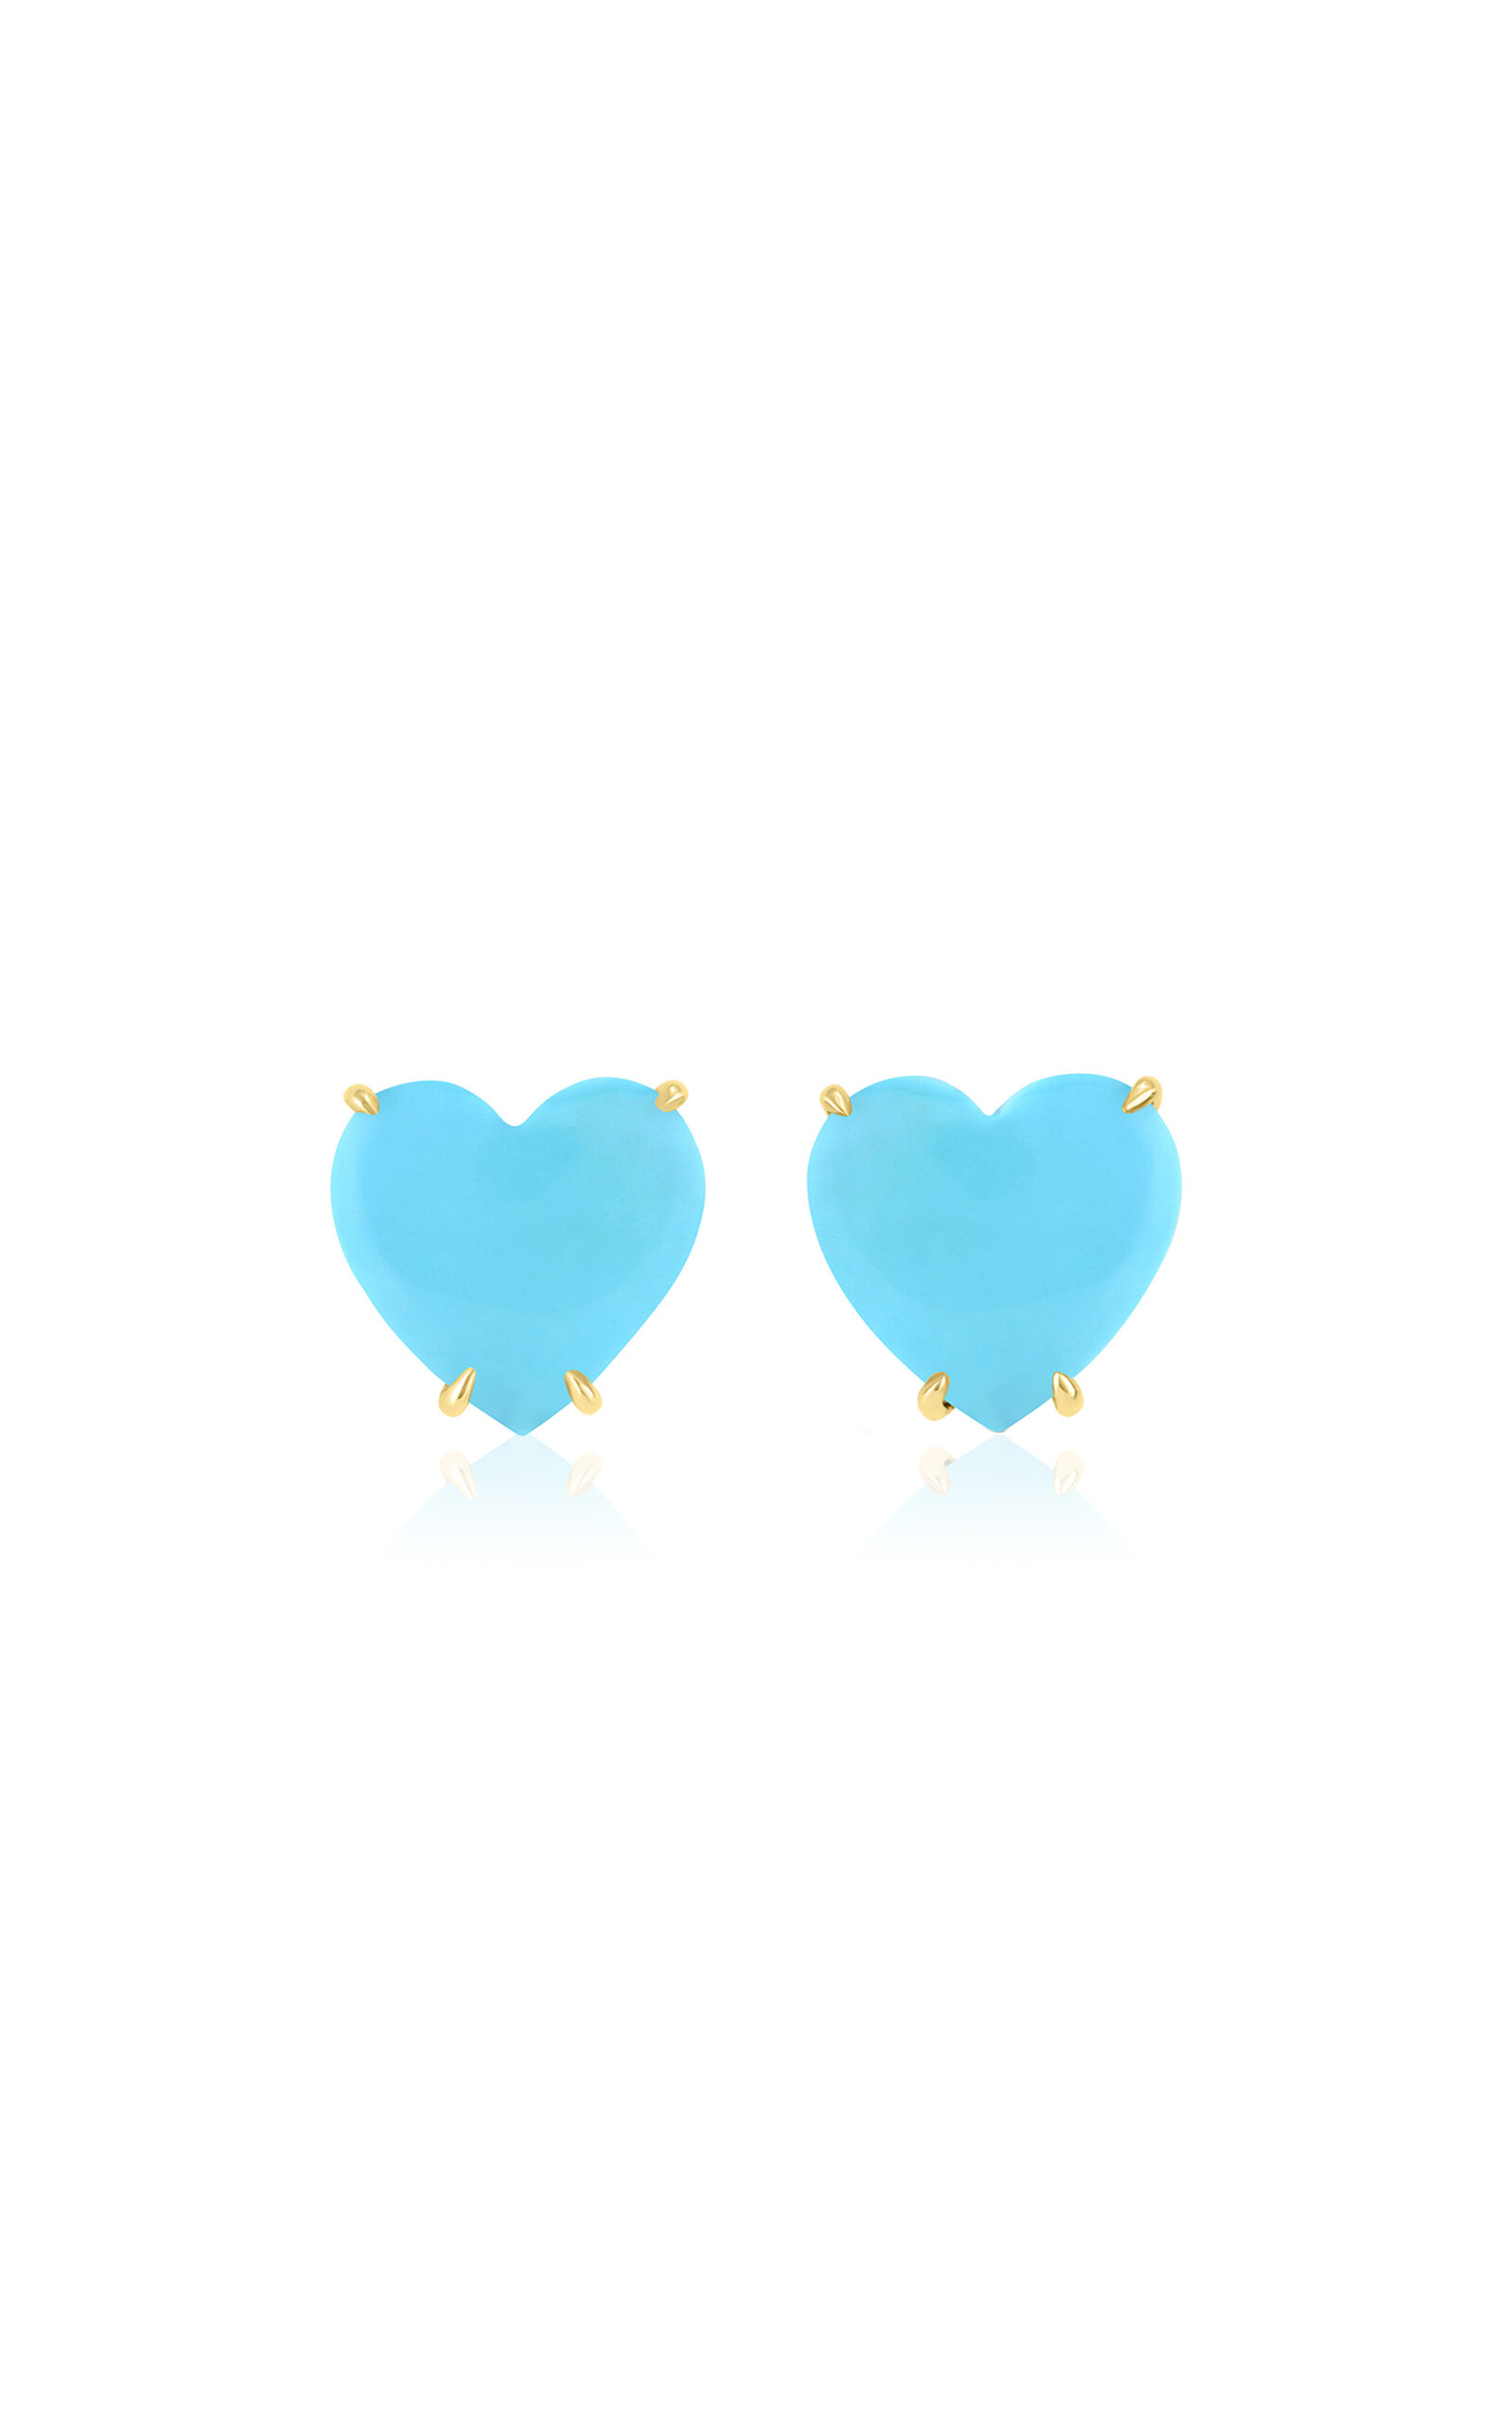 M.spalten Women's The Single Heart 14k Yellow Gold Turquoise Earrings In Blue